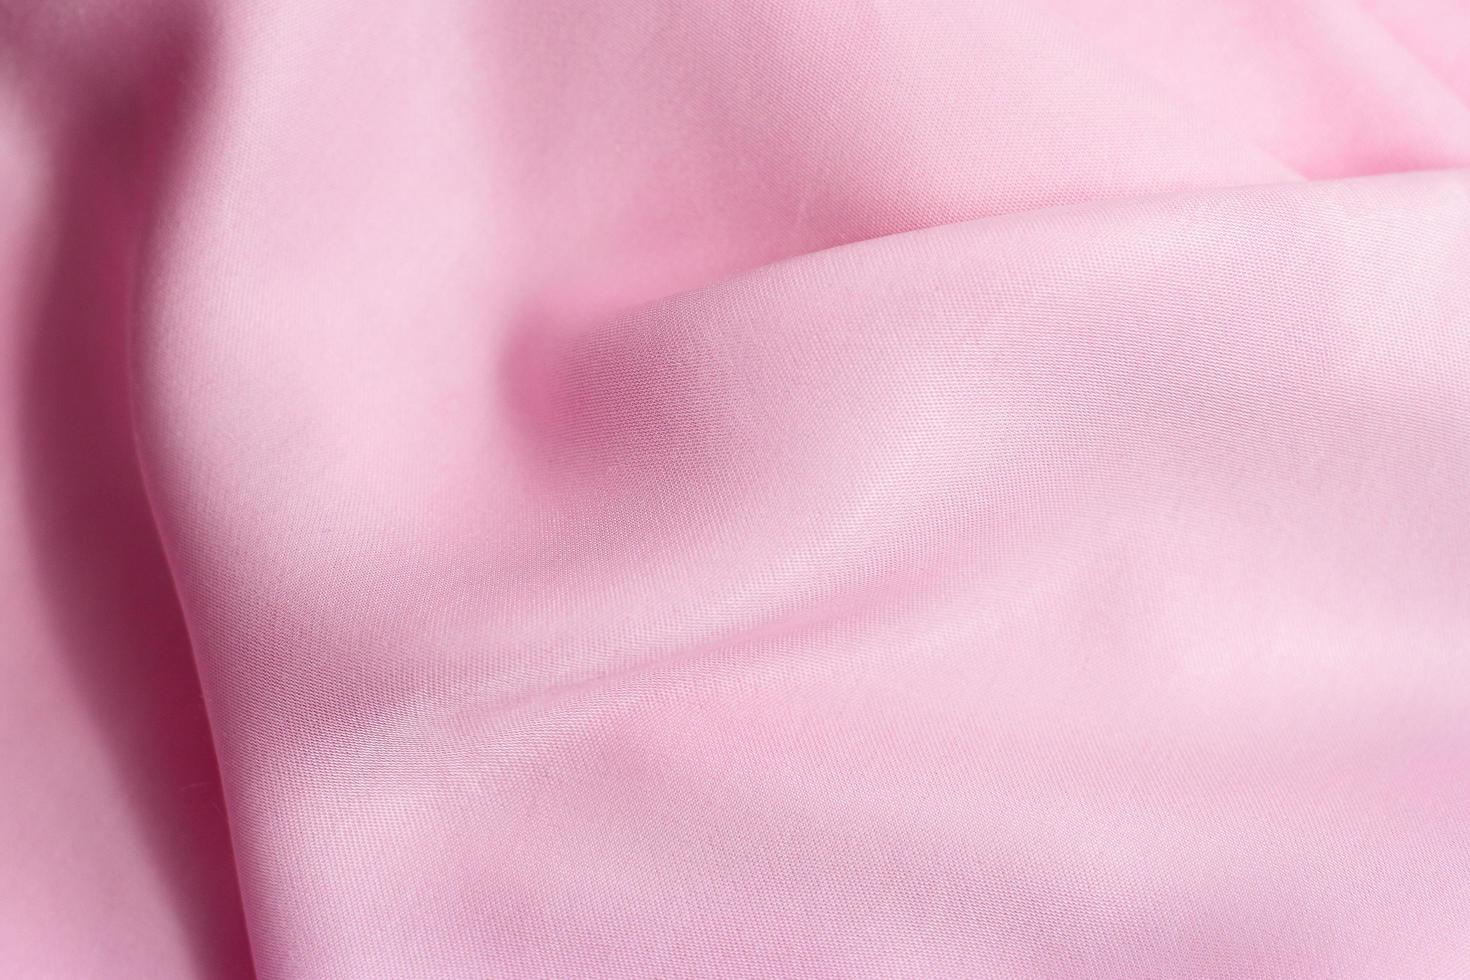 Rose seidig Material Textur rosa Seidenmuster Hintergrund foto